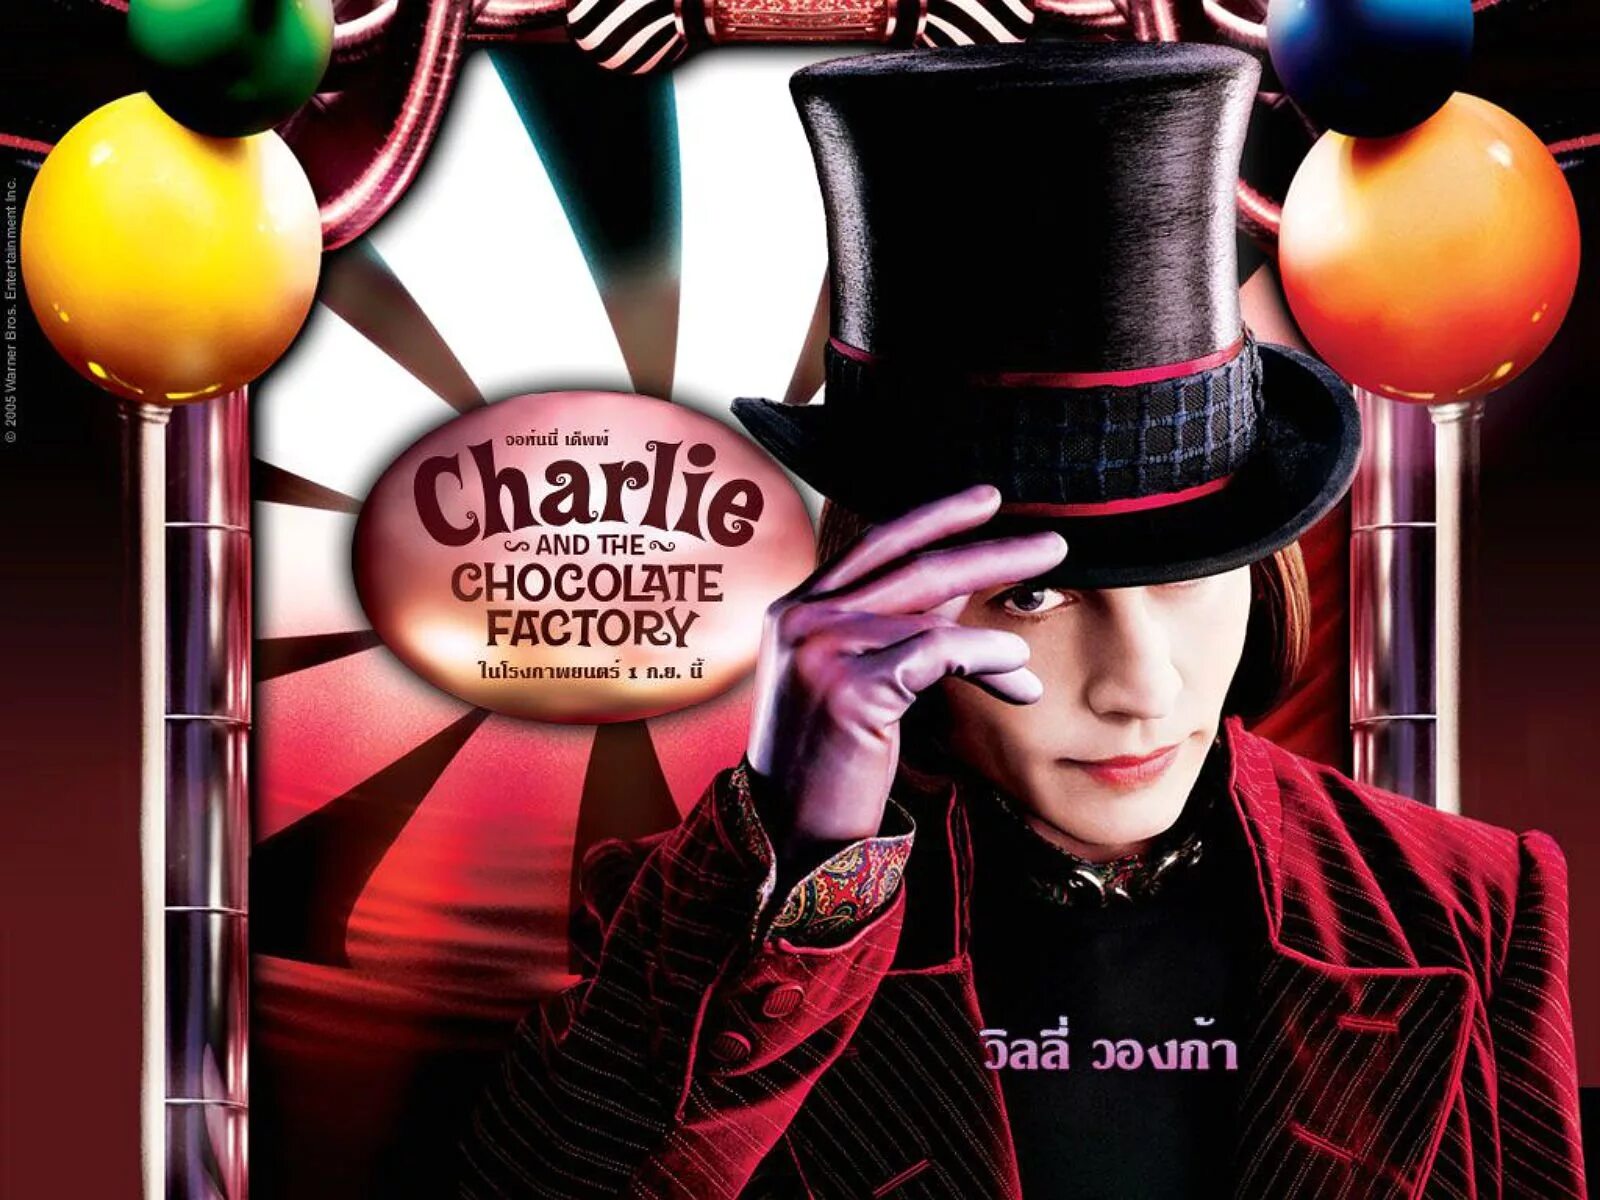 Сюжет шоколадной фабрики. Джонни Депп Чарли и шоколадная фабрика. Чарли и шоколадная фабрика / Charlie and the Chocolate Factory (2005).